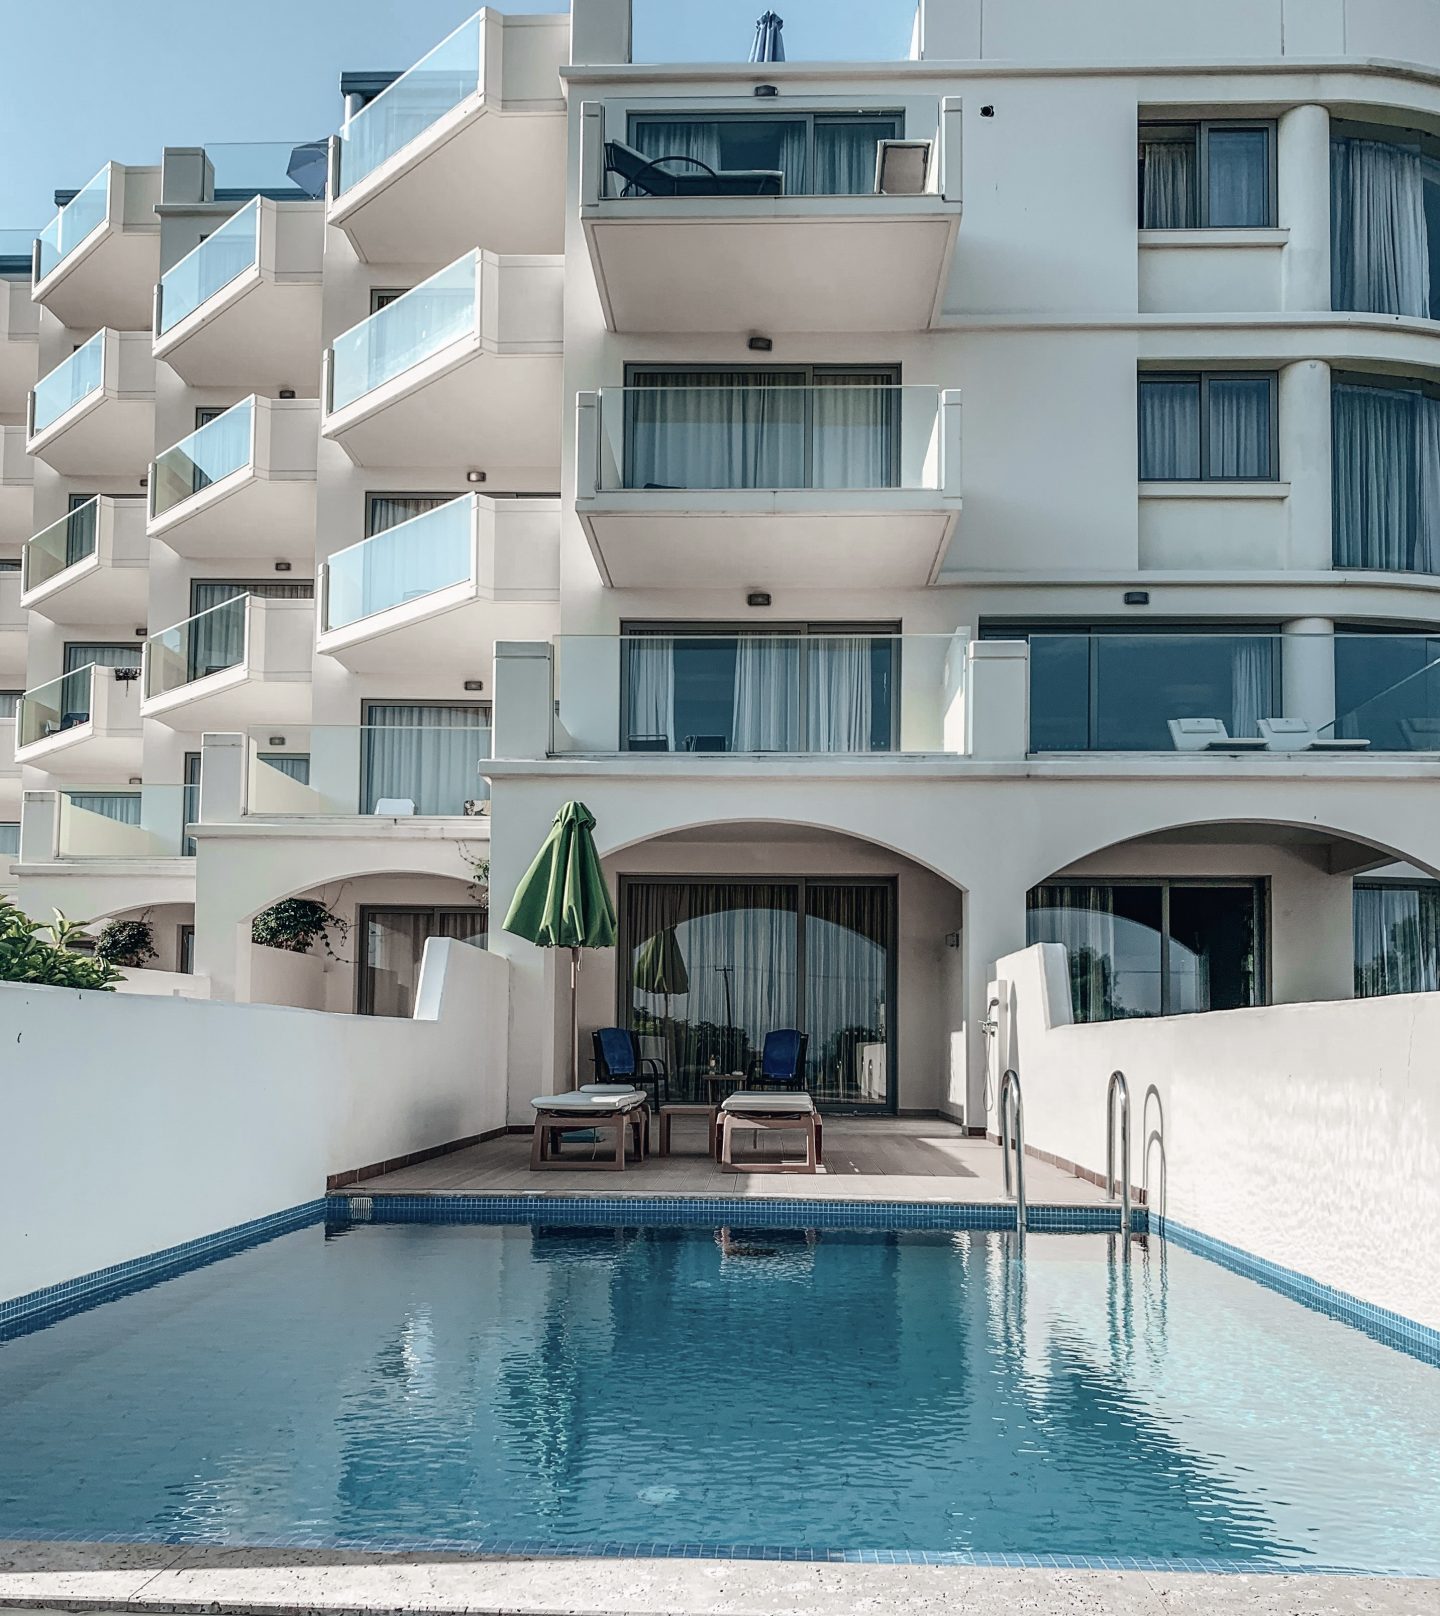 Holiday in Rhodes, Greece. Atrium Hotels. Atrium Platinum Resort Hotel & Spa. Best Hotels in Rhodes | Pools